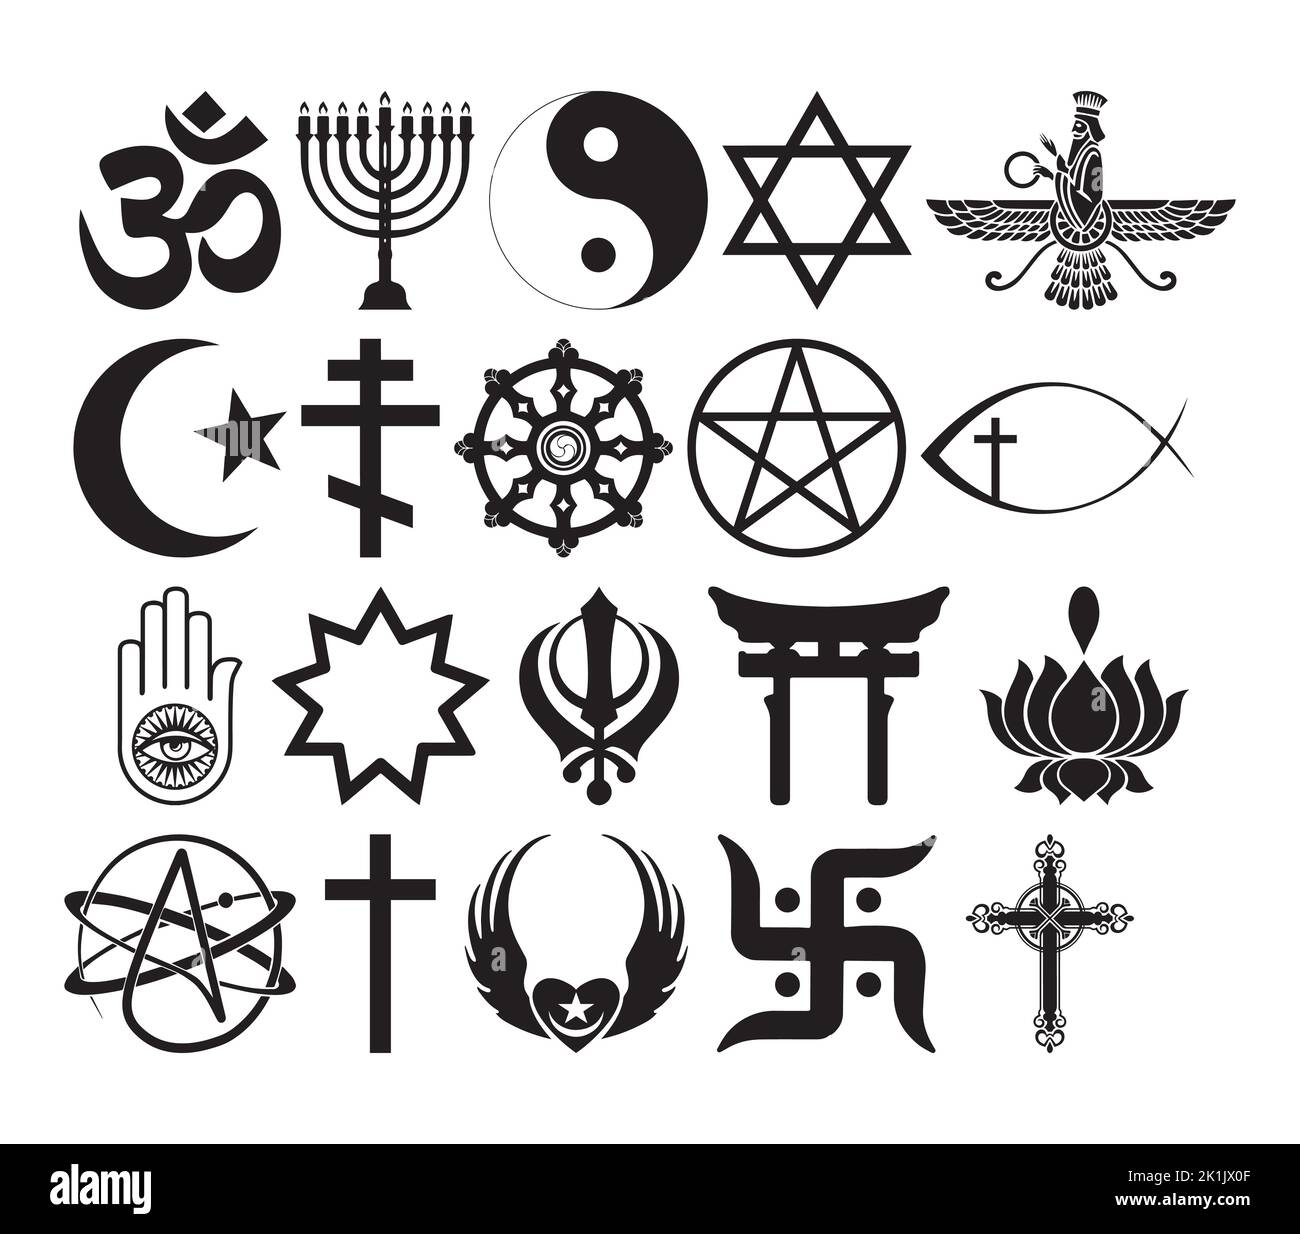 Illustrazione vettoriale della clipart dei simboli religiosi e religiosi del mondo. Silhouette segno set di credenza. Illustrazione vettoriale Illustrazione Vettoriale